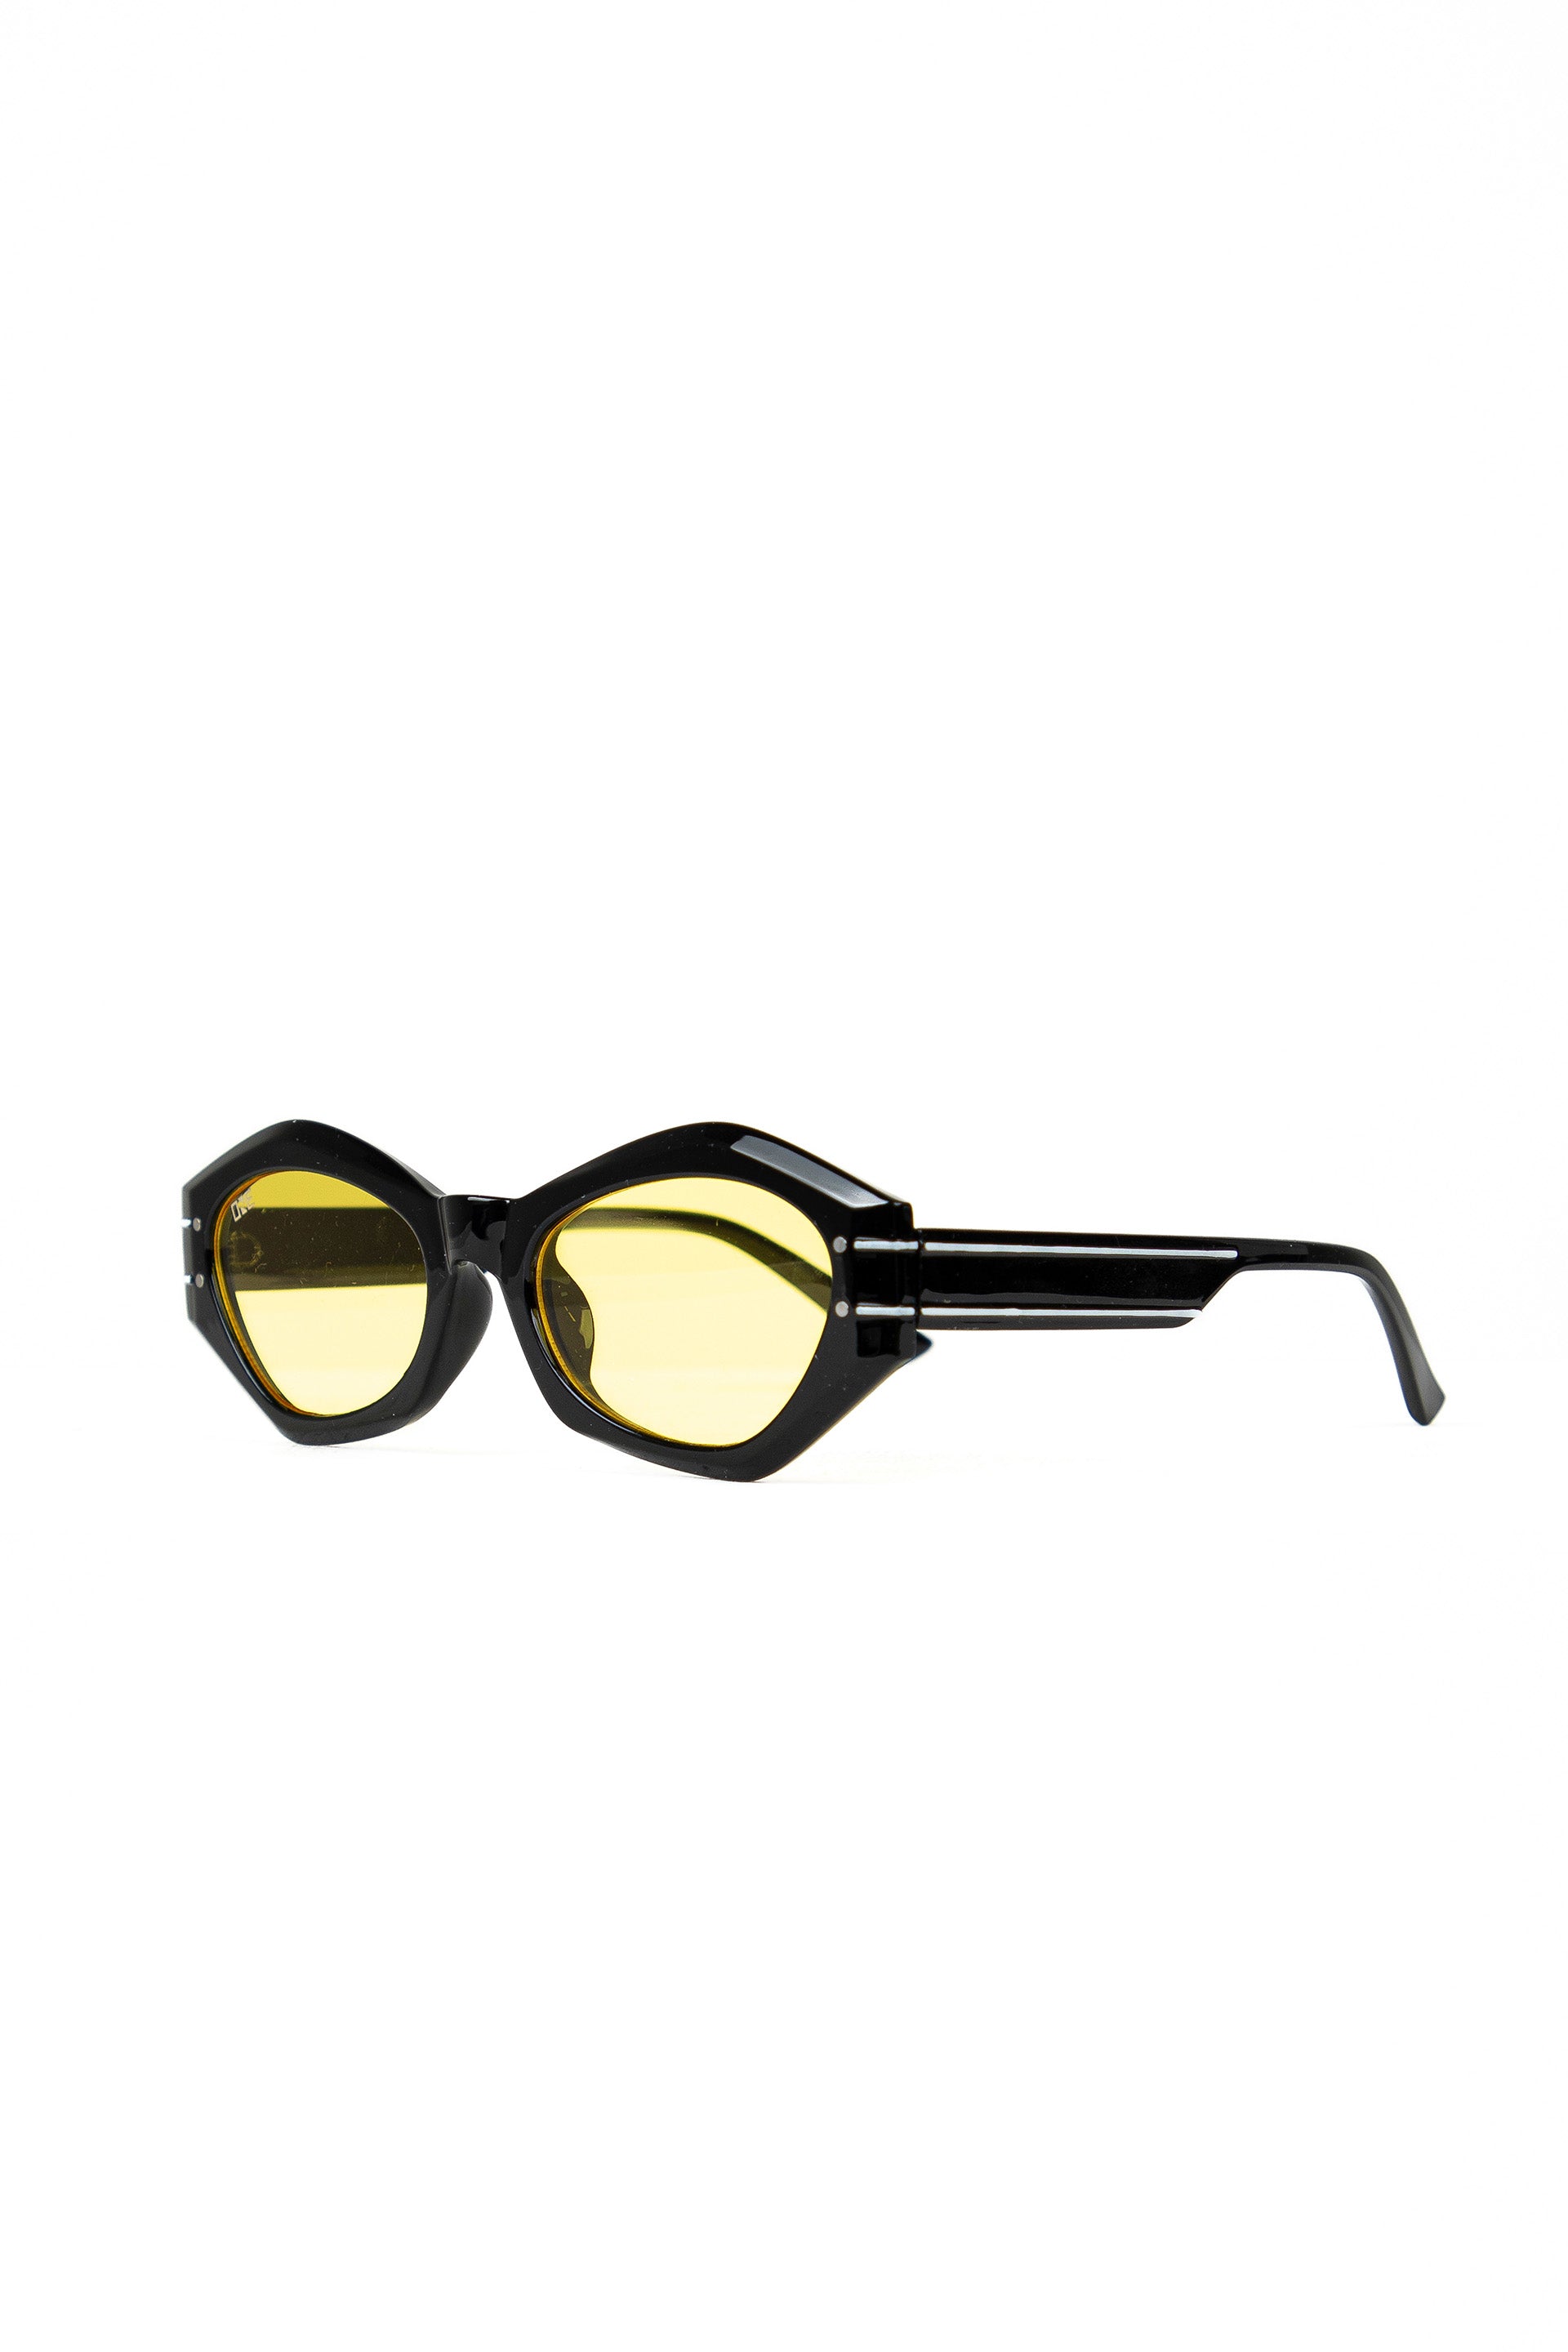 Retro Glasses Yellow